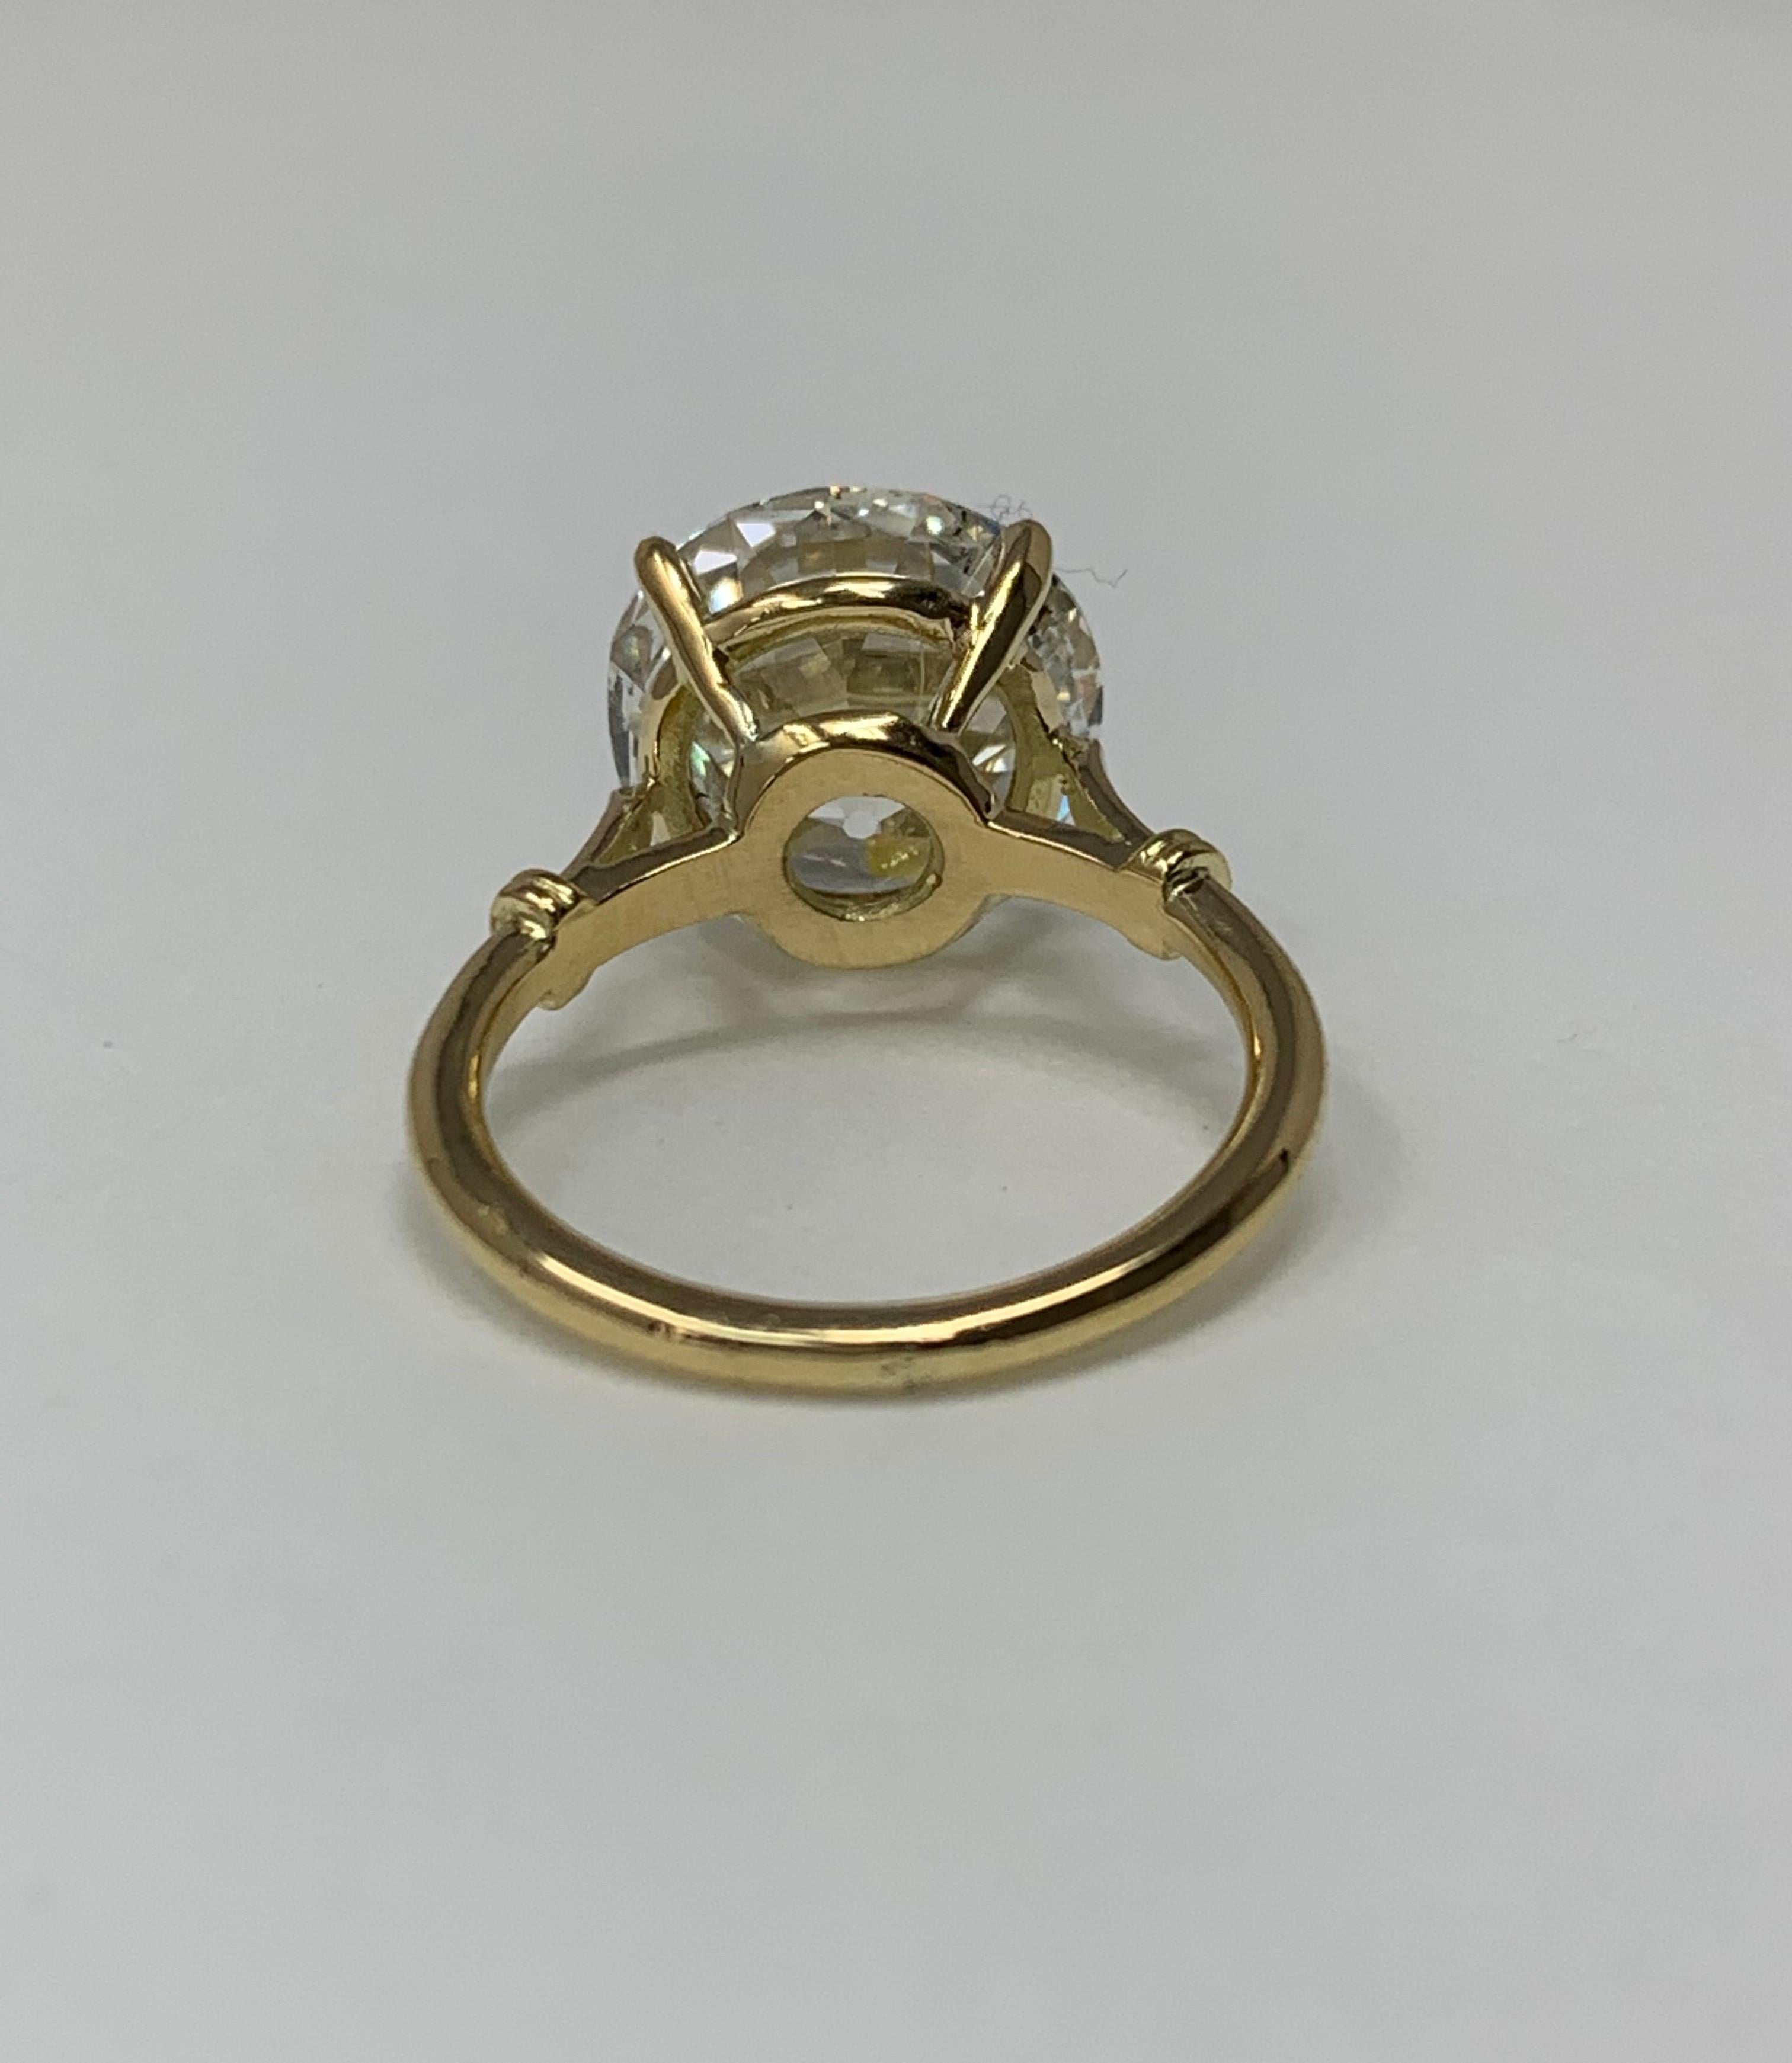 6.30 Carat Old European Cut Diamond Ring in 18 Karat Gold, GIA Certified. 2